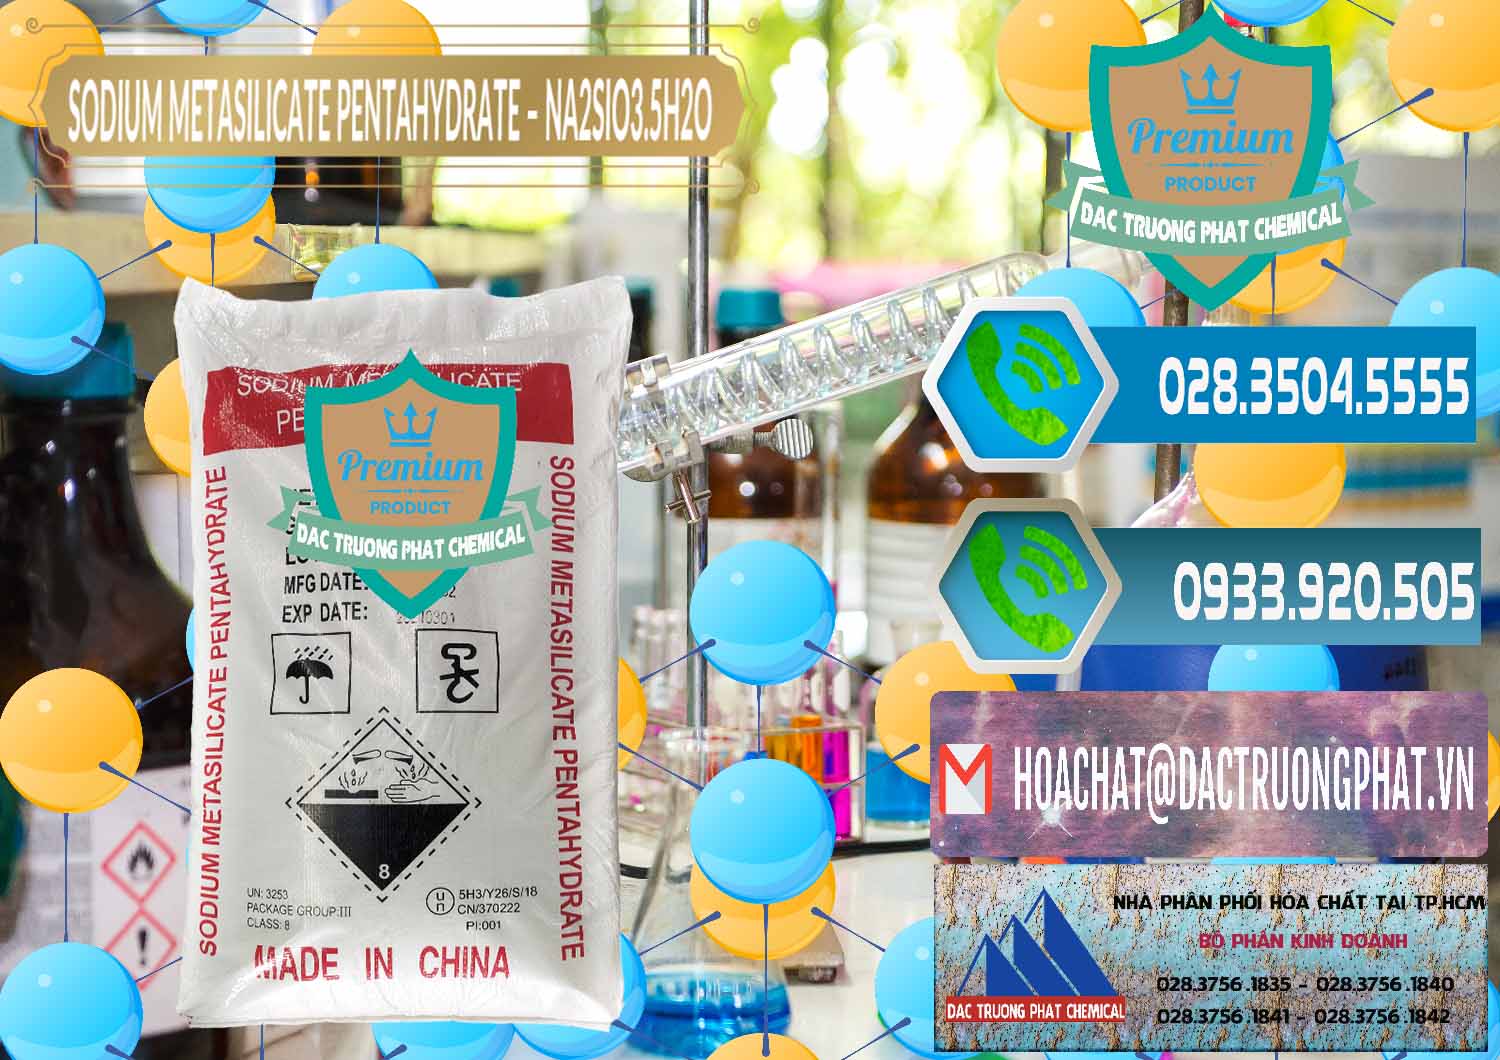 Nơi chuyên kinh doanh ( bán ) Sodium Metasilicate Pentahydrate – Silicate Bột Trung Quốc China - 0147 - Đơn vị chuyên cung cấp ( kinh doanh ) hóa chất tại TP.HCM - congtyhoachat.net